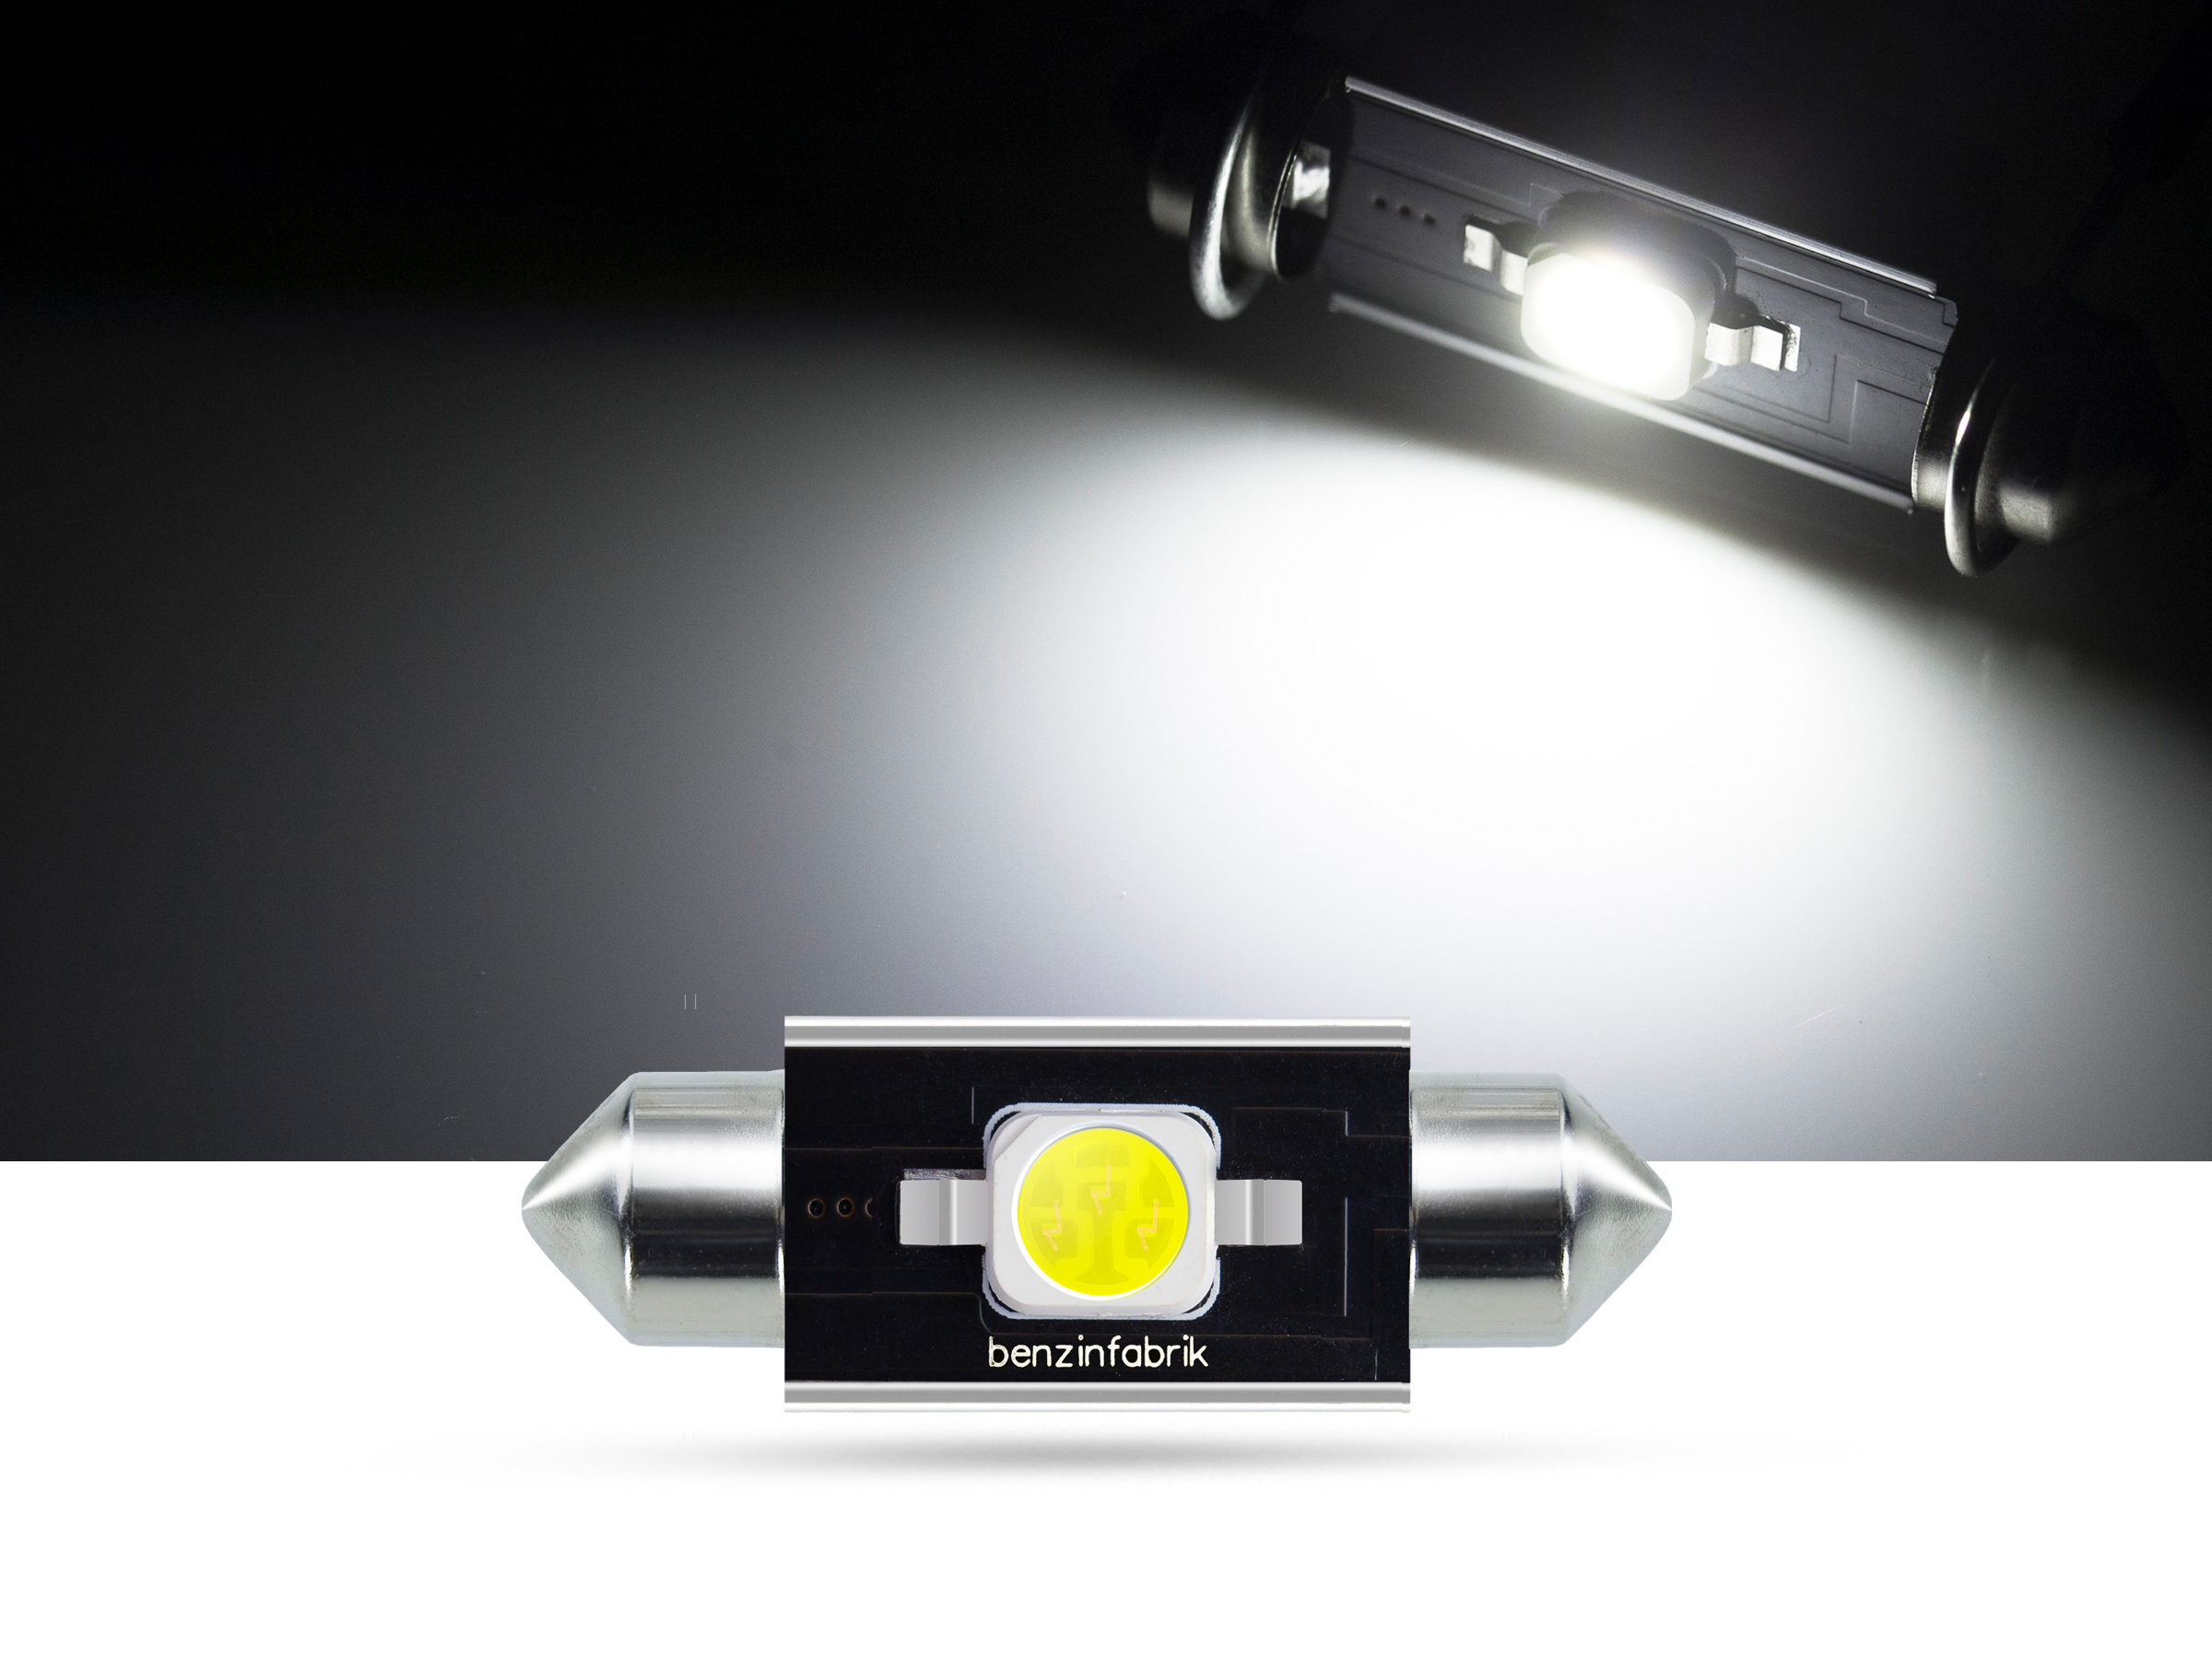 36mm 2 Watt SMD LED Soffitte Innenraumlicht, CAN-bus, weiss